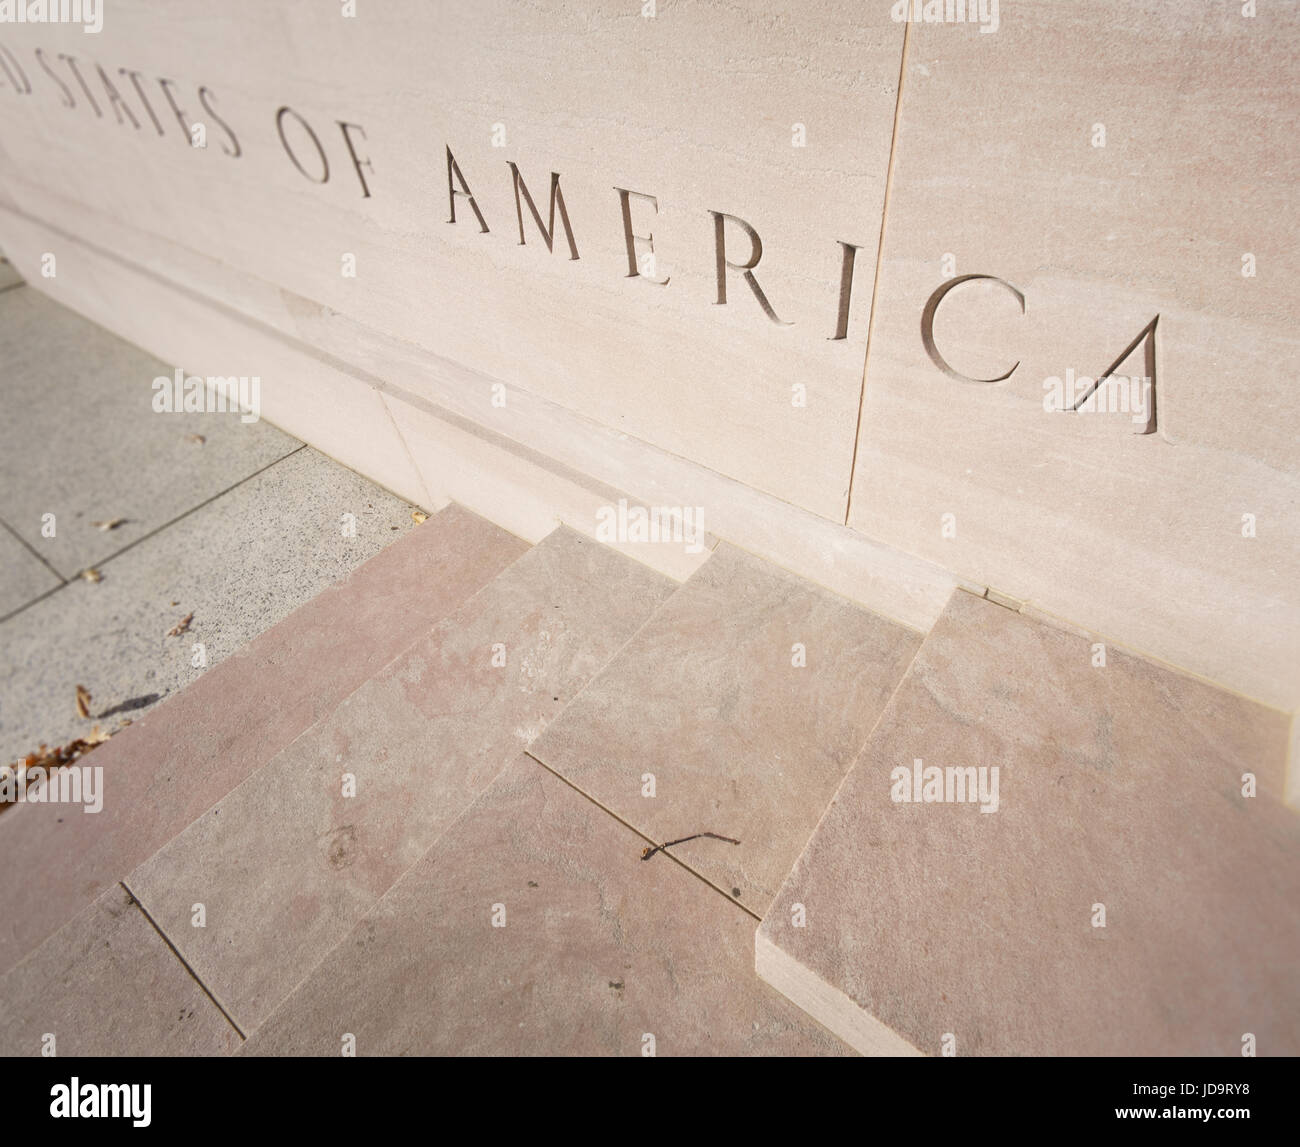 Hohe Angleview, Nahaufnahme, Vereinigte Staaten von Amerika, geschnitzten Buchstaben auf Stein. Hauptstadt Washington Usa 2016 fallen Stockfoto